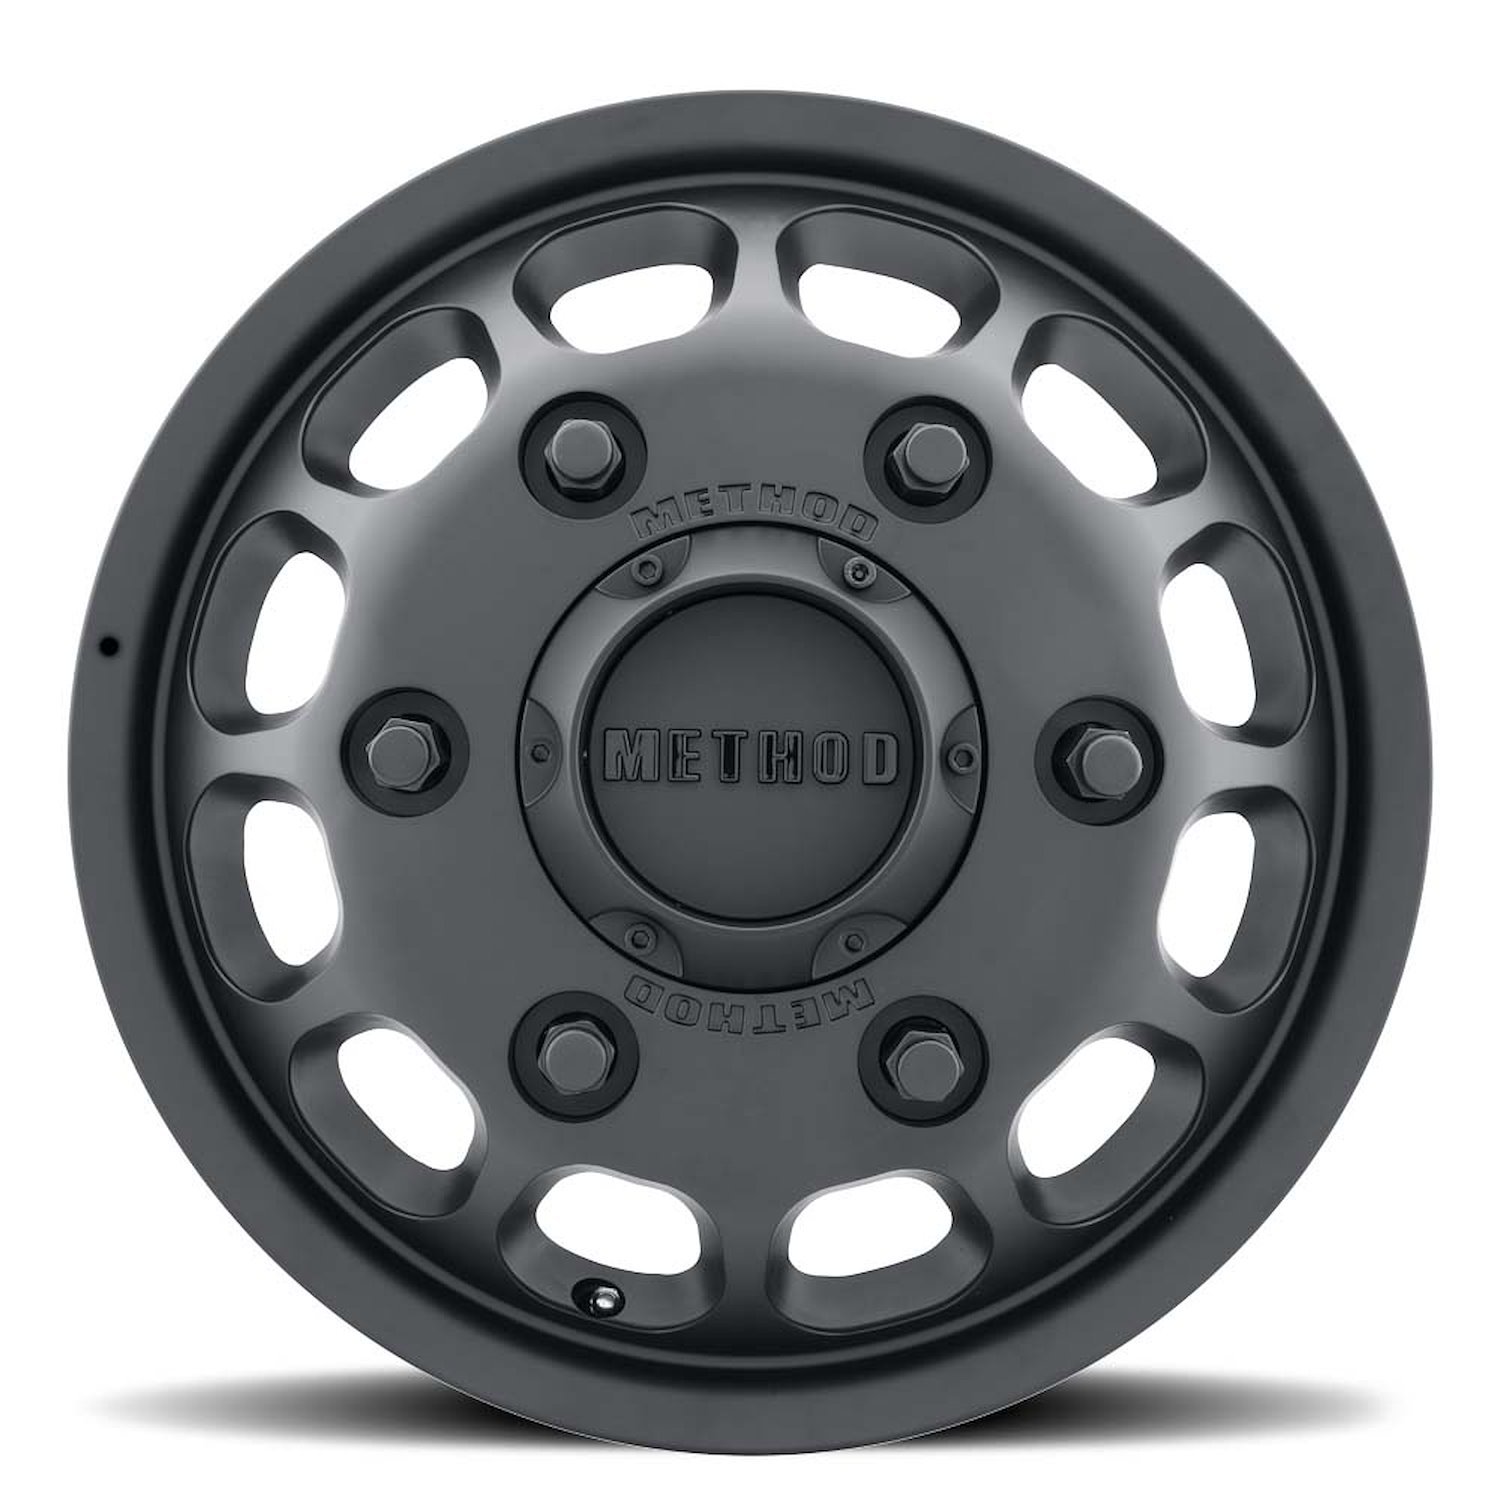 MR901655925117 DUALLY MR901 - FRONT Wheel [Size: 16" x 5.5"] Matte Black